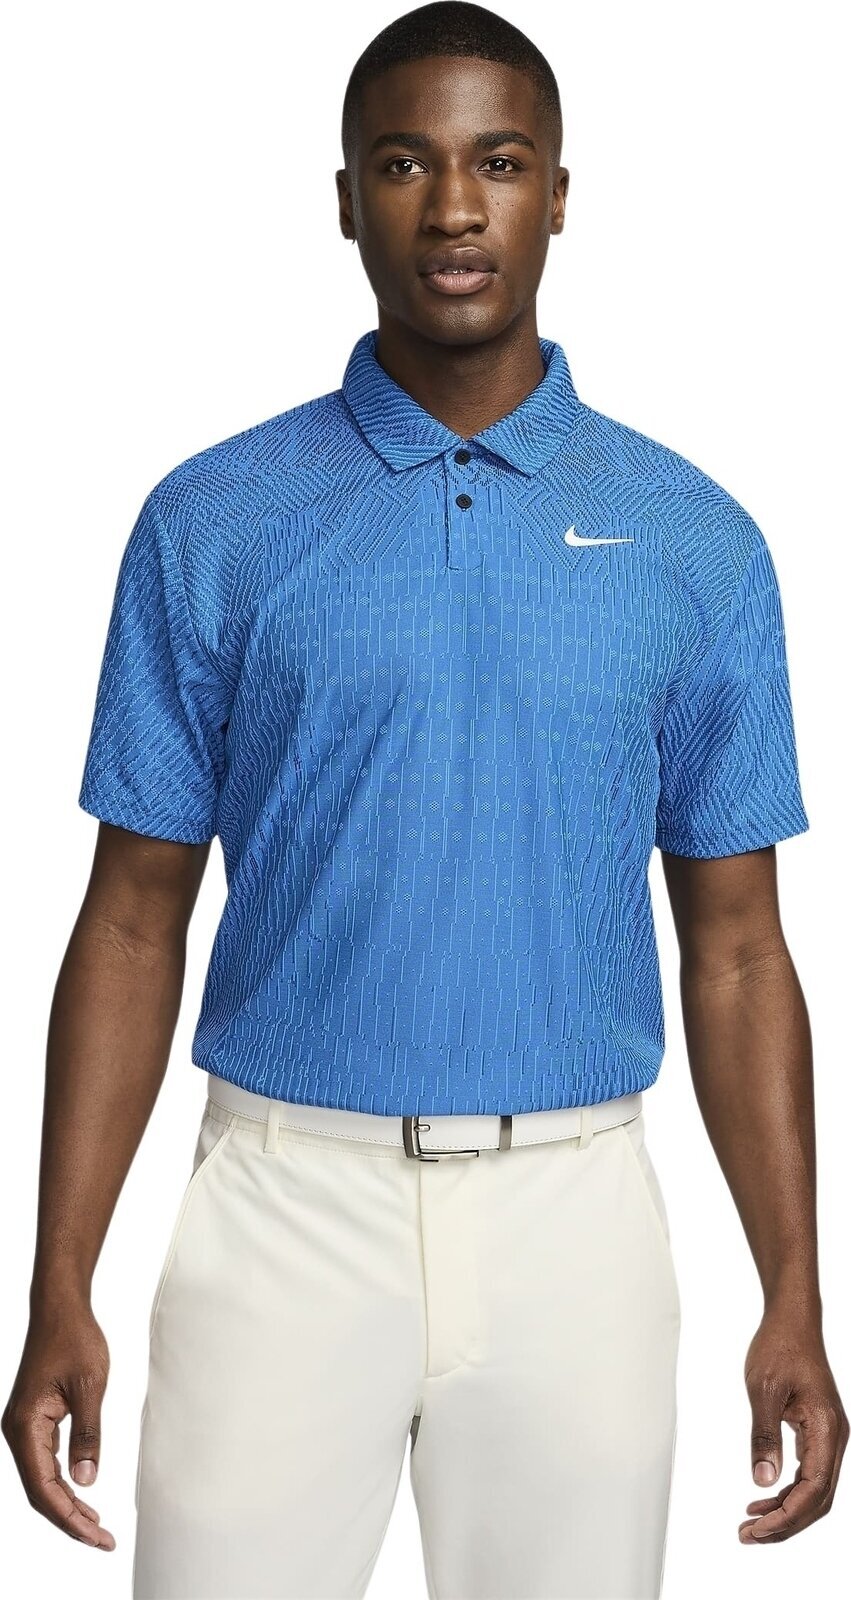 Camiseta polo Nike Dri-Fit ADV Tour Mens Polo Light Photo Blue/Court Blue/White M